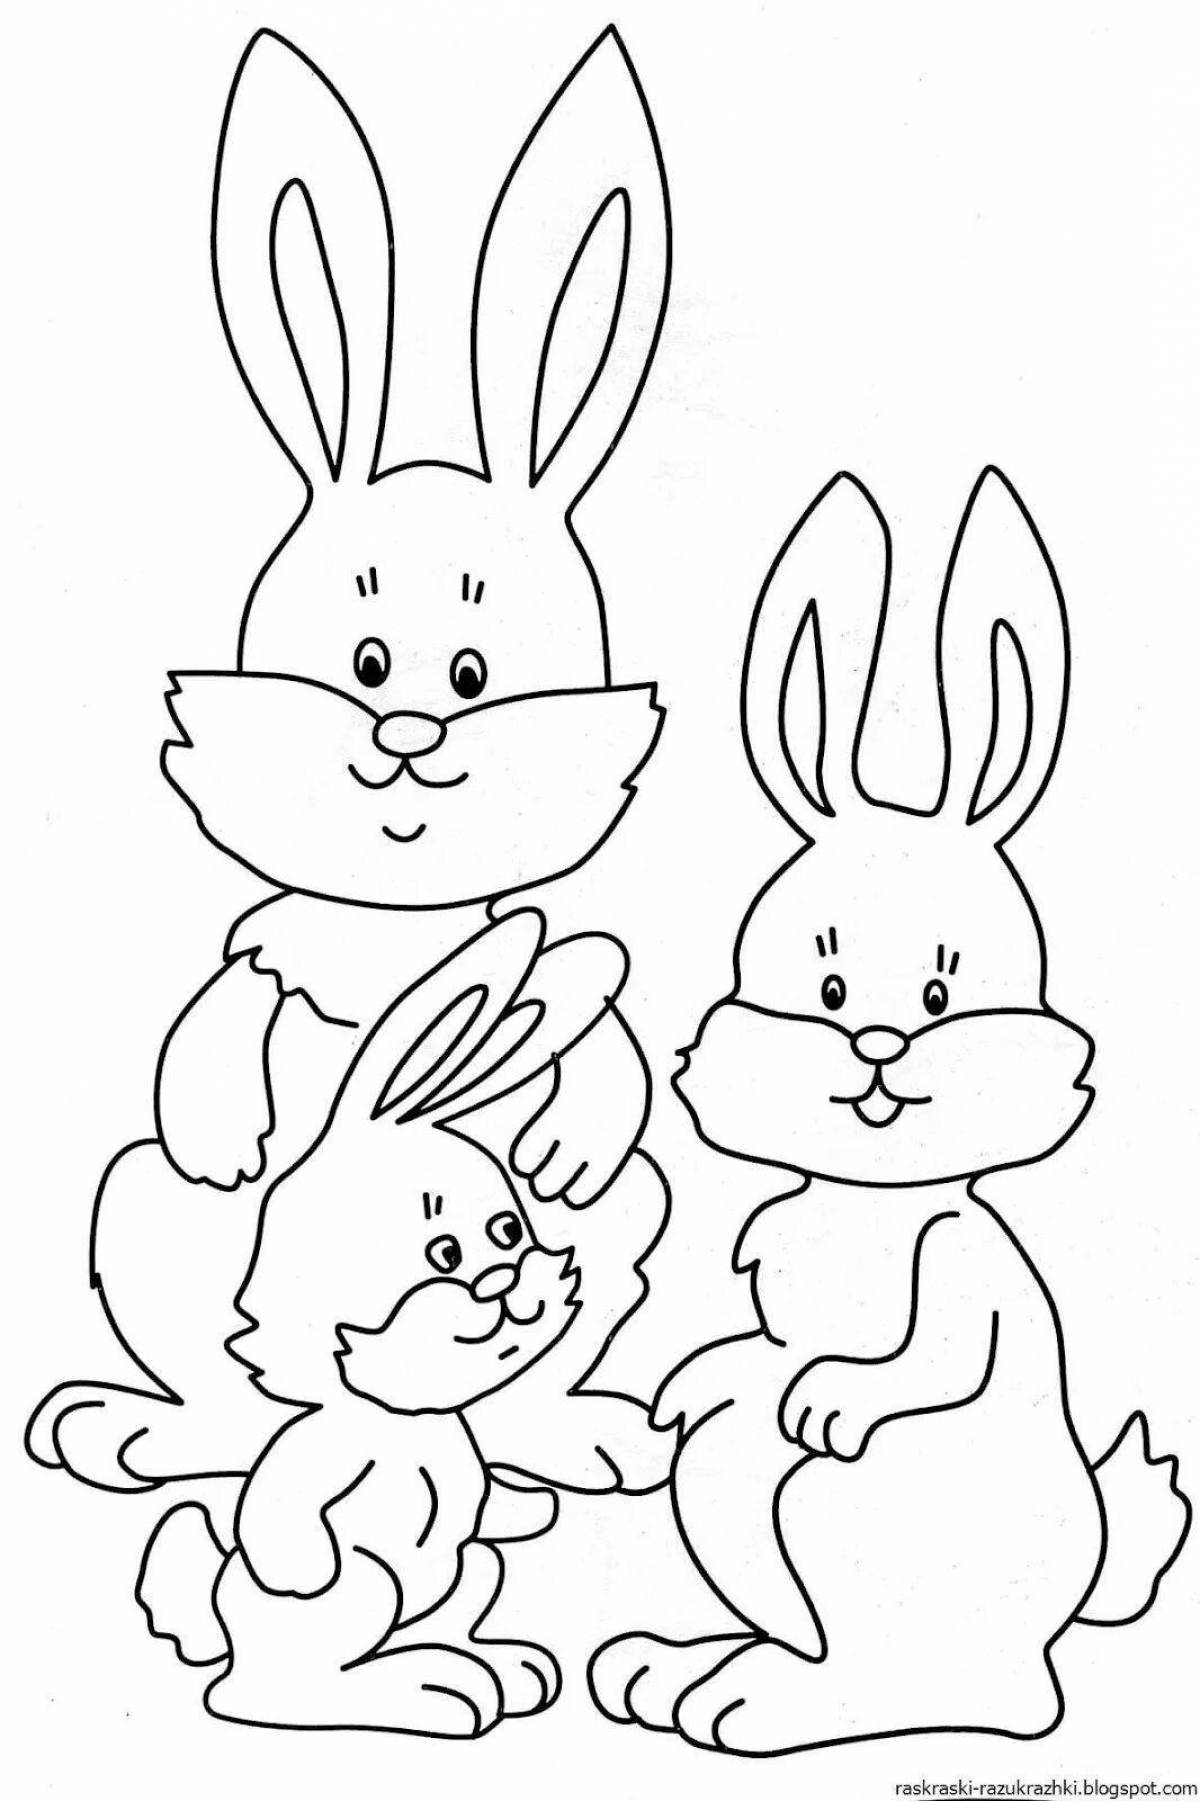 Милая раскраска кролик для детей 3 4